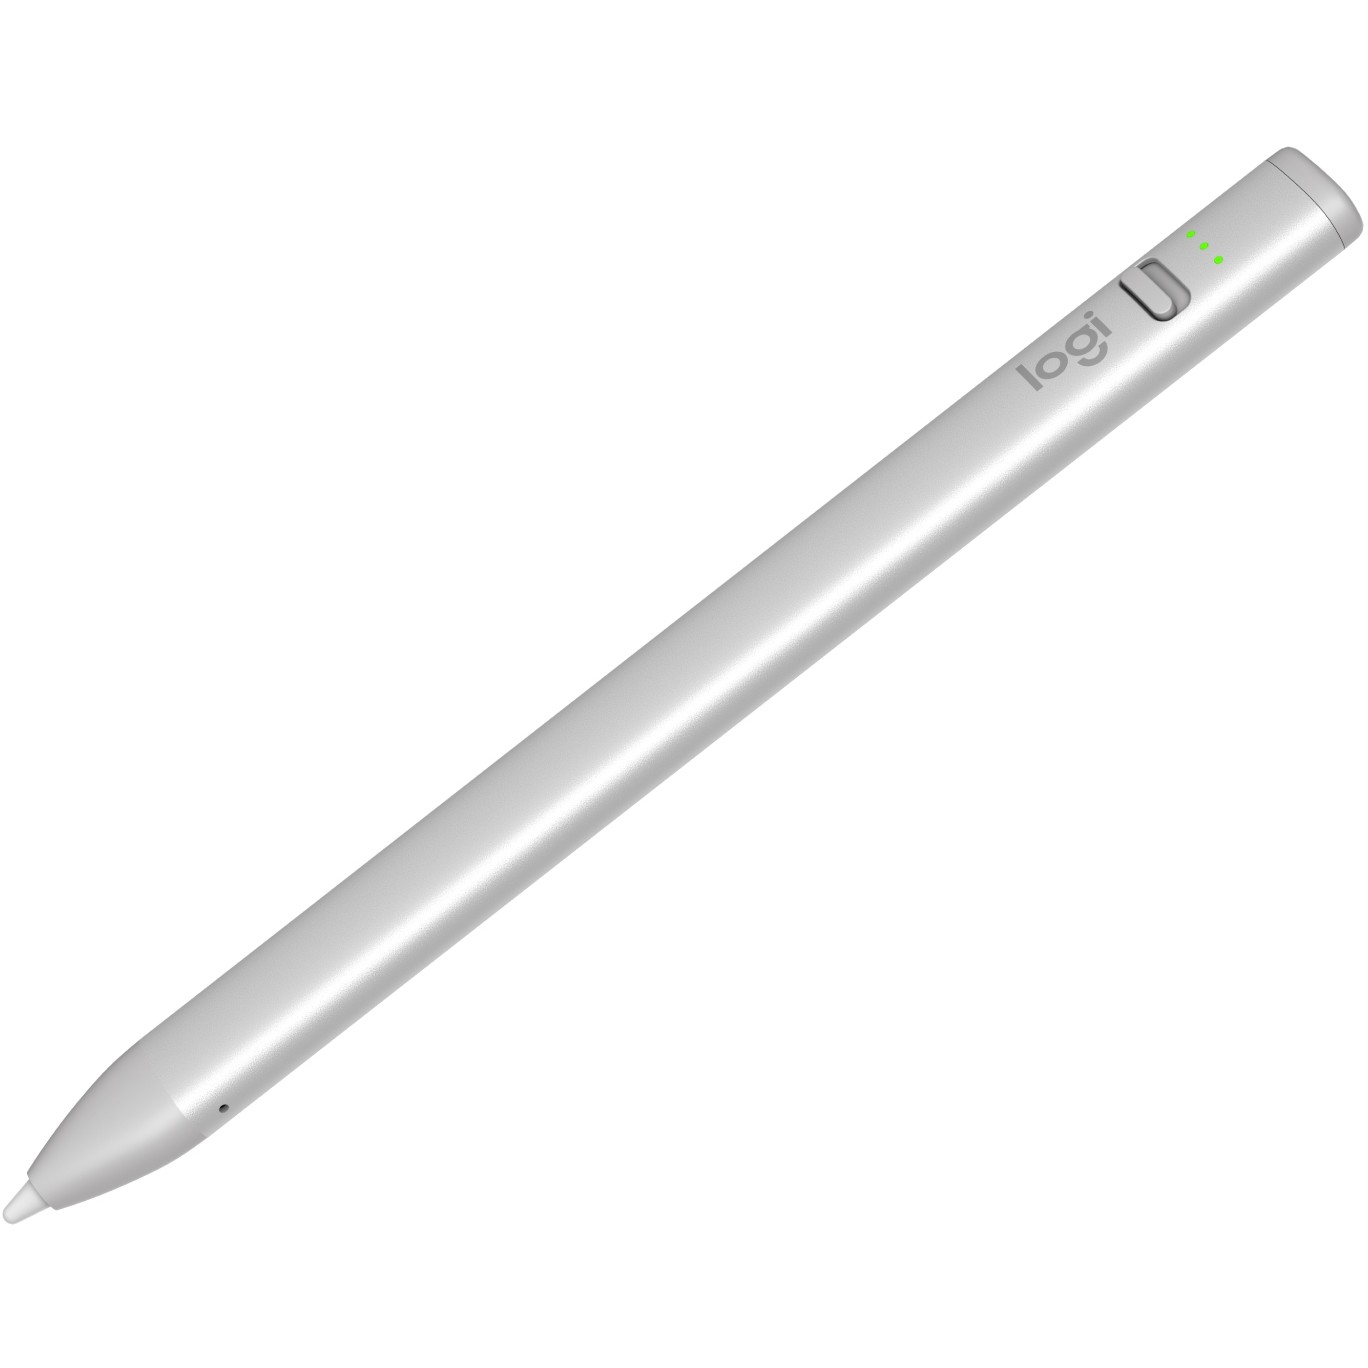 Logitech Crayon stylus pen